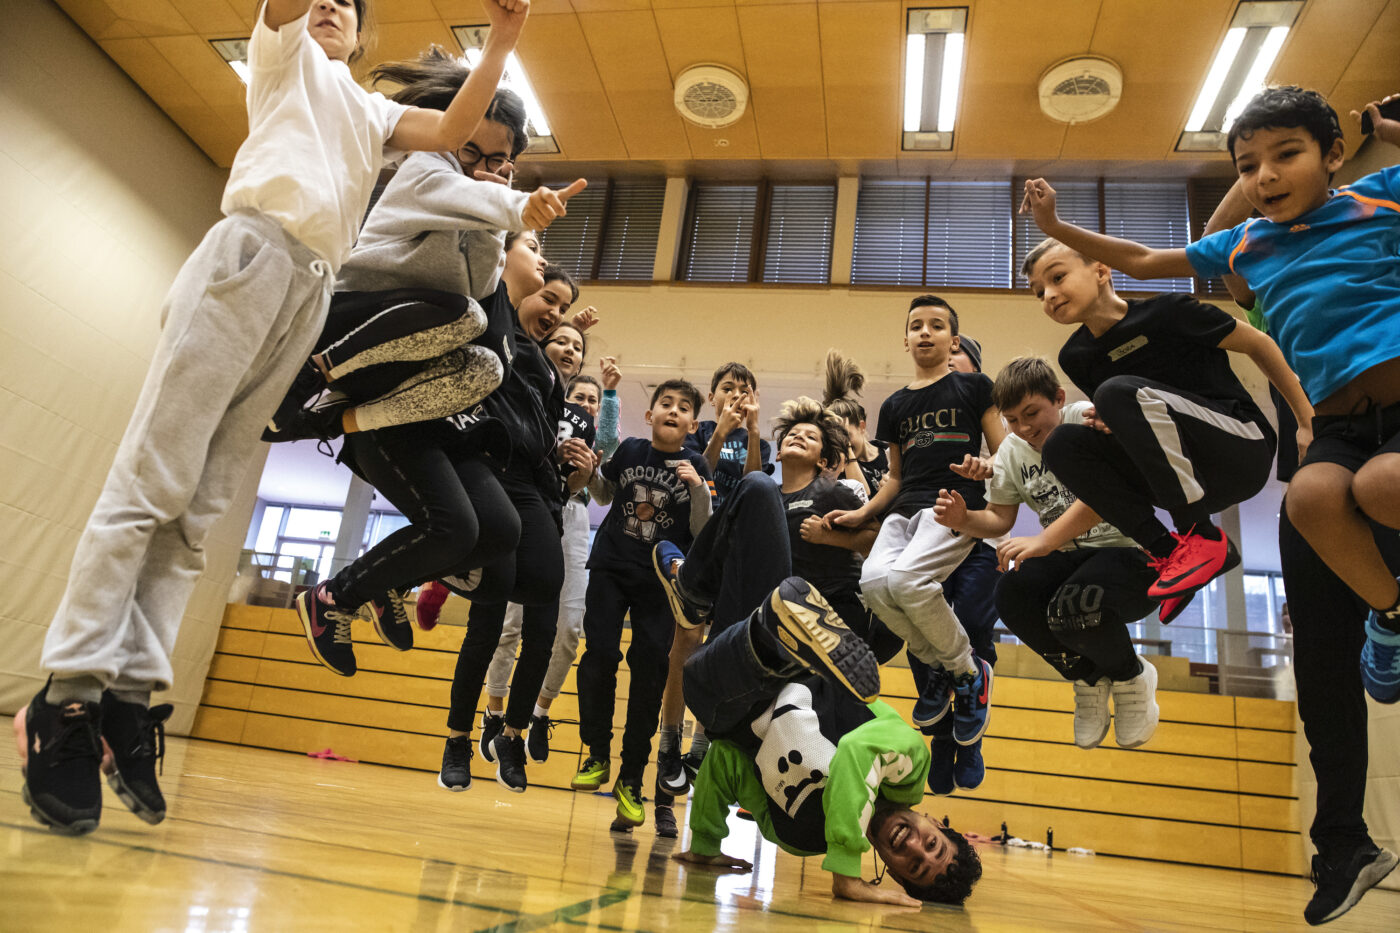 Breakdancer Moses macht einen Breakdance Trick in der Mitte von springenden Kindern.